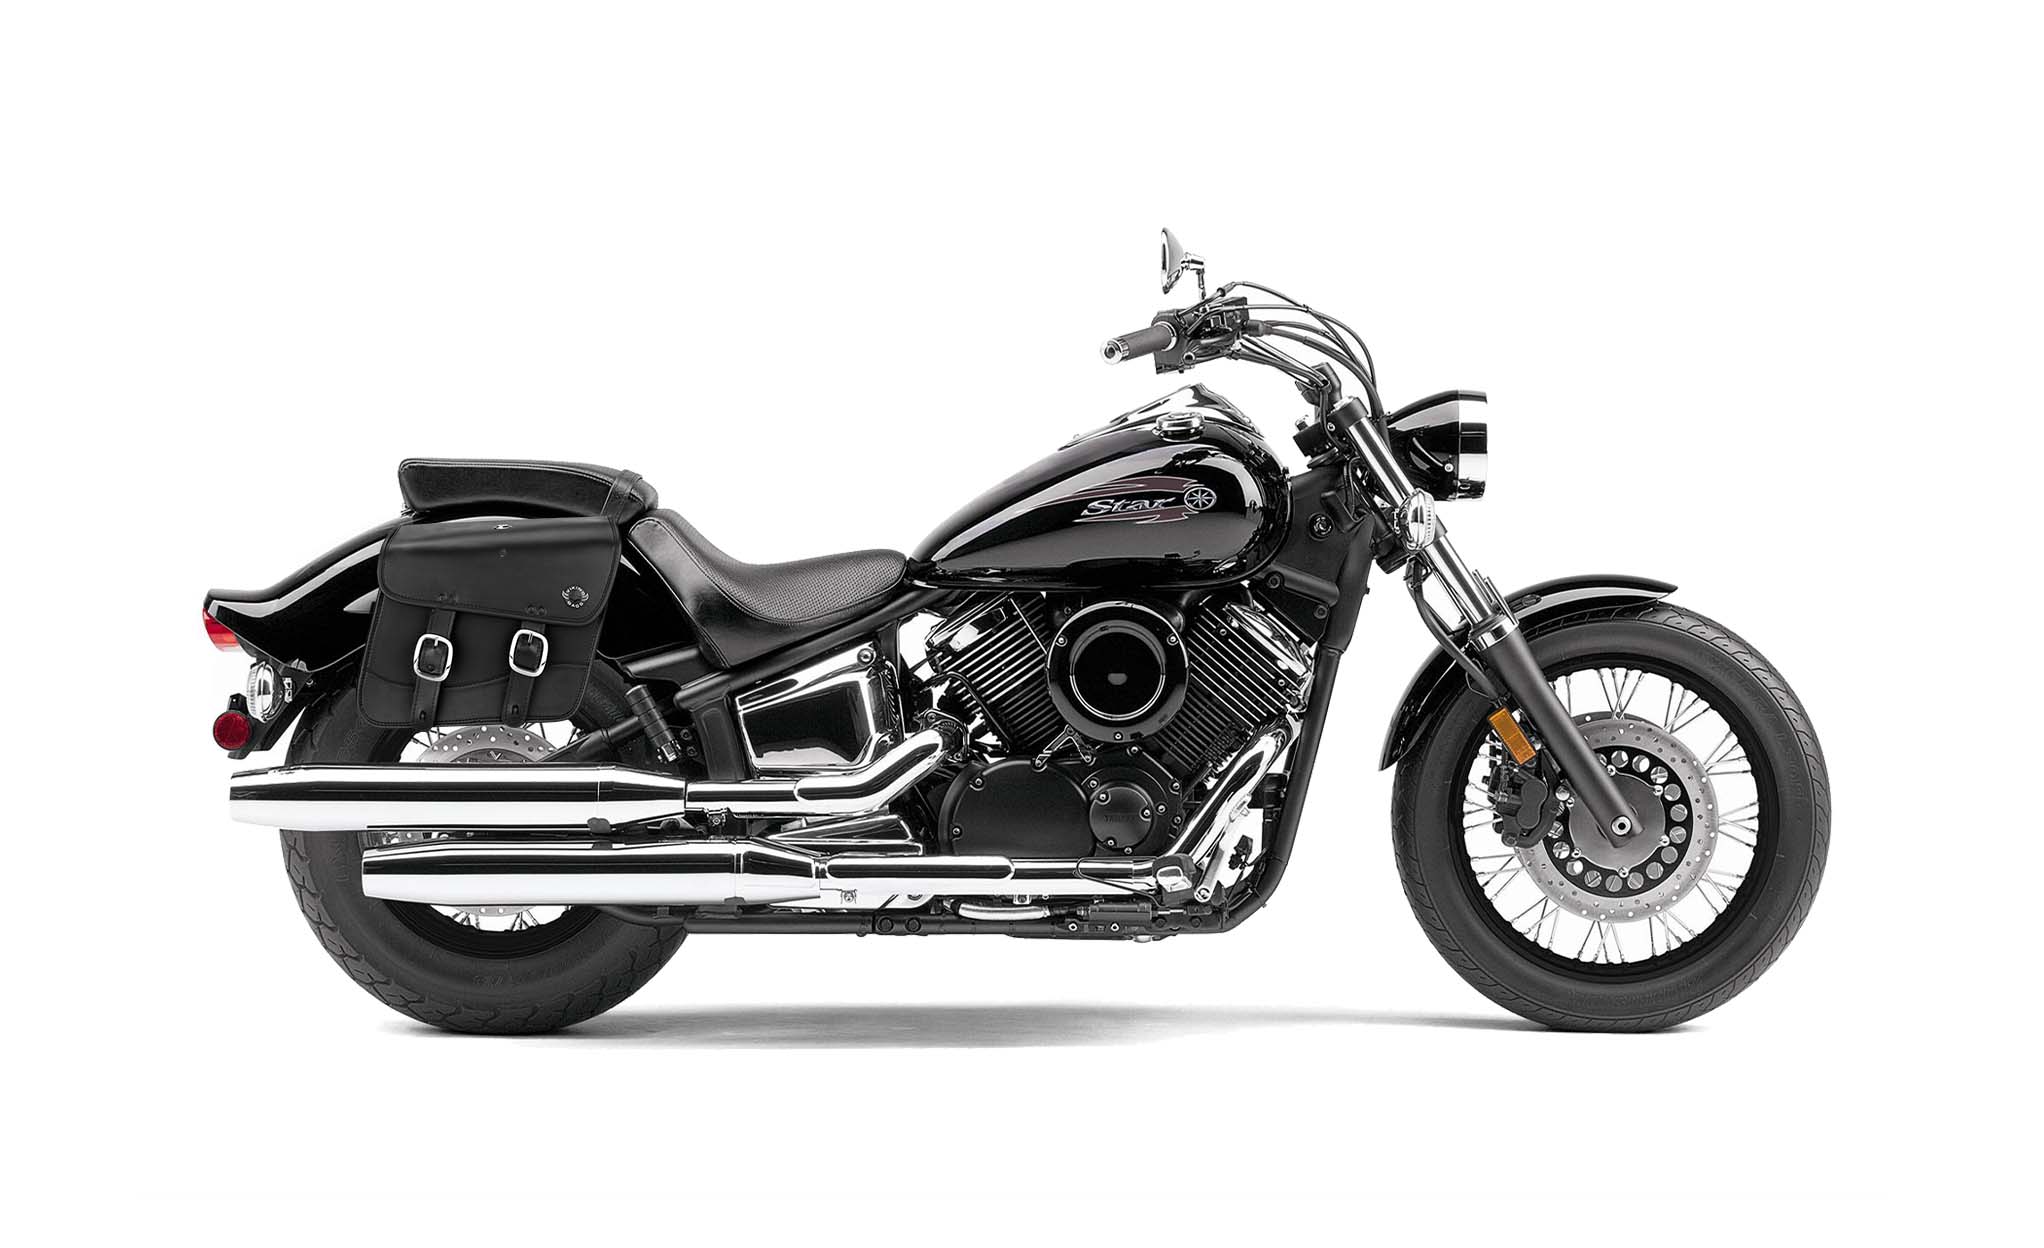 Viking Thor Medium Yamaha V Star 1100 Custom Xvs11T Leather Motorcycle Saddlebags on Bike Photo @expand